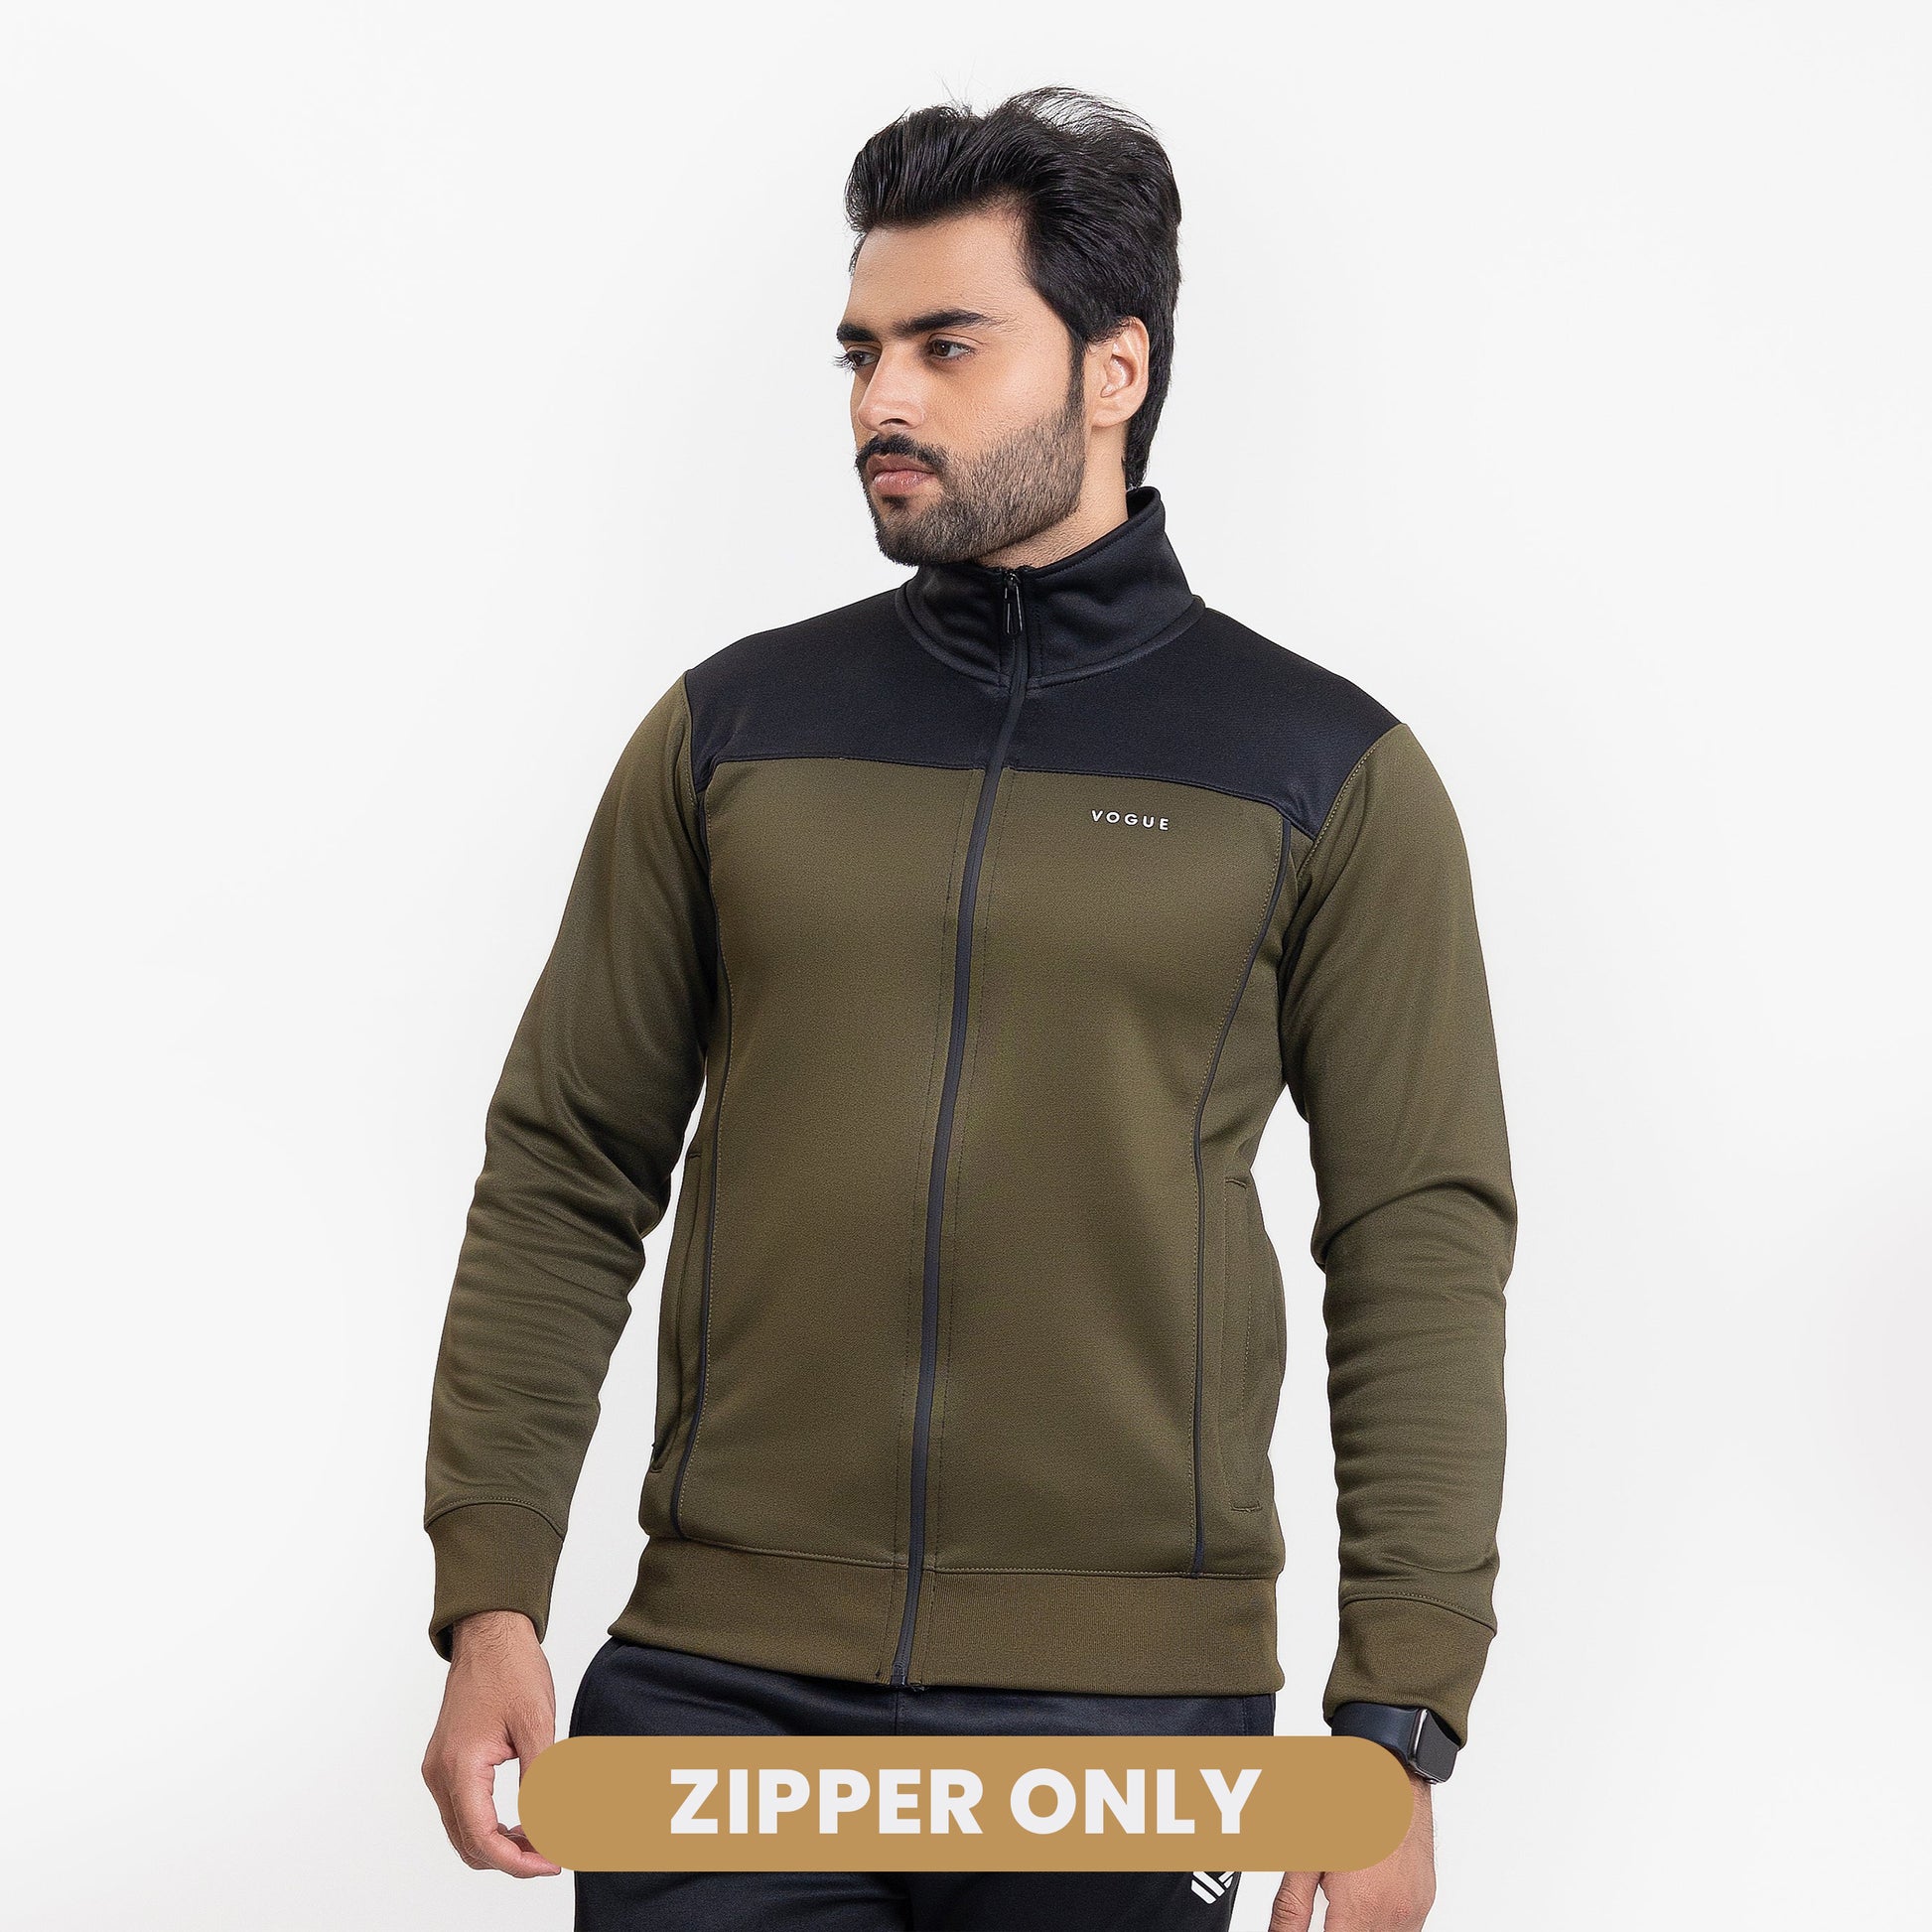 Strike Olive Zipper/Top in Polyester Fleece